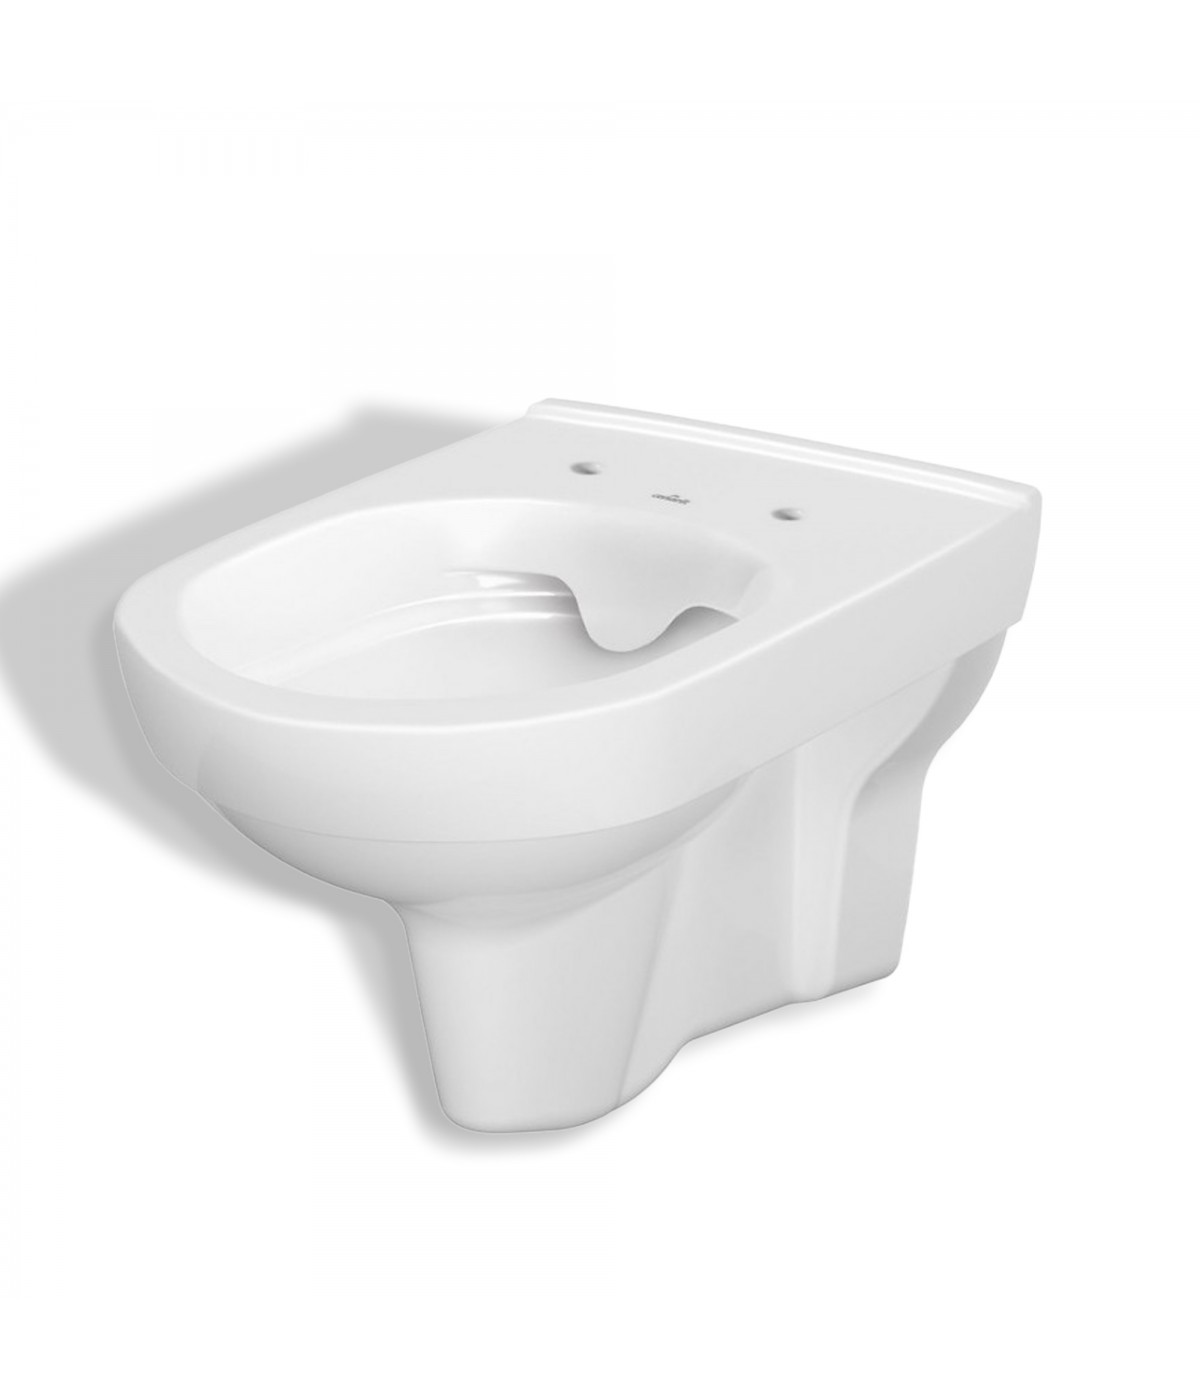 SET: WC-Vorwandelement Duofix + WC-Toilette SLIM Soft-Close City-Cleanon Weiß + Schallschutzmatte + WC-Betätigungsplatte Weiß